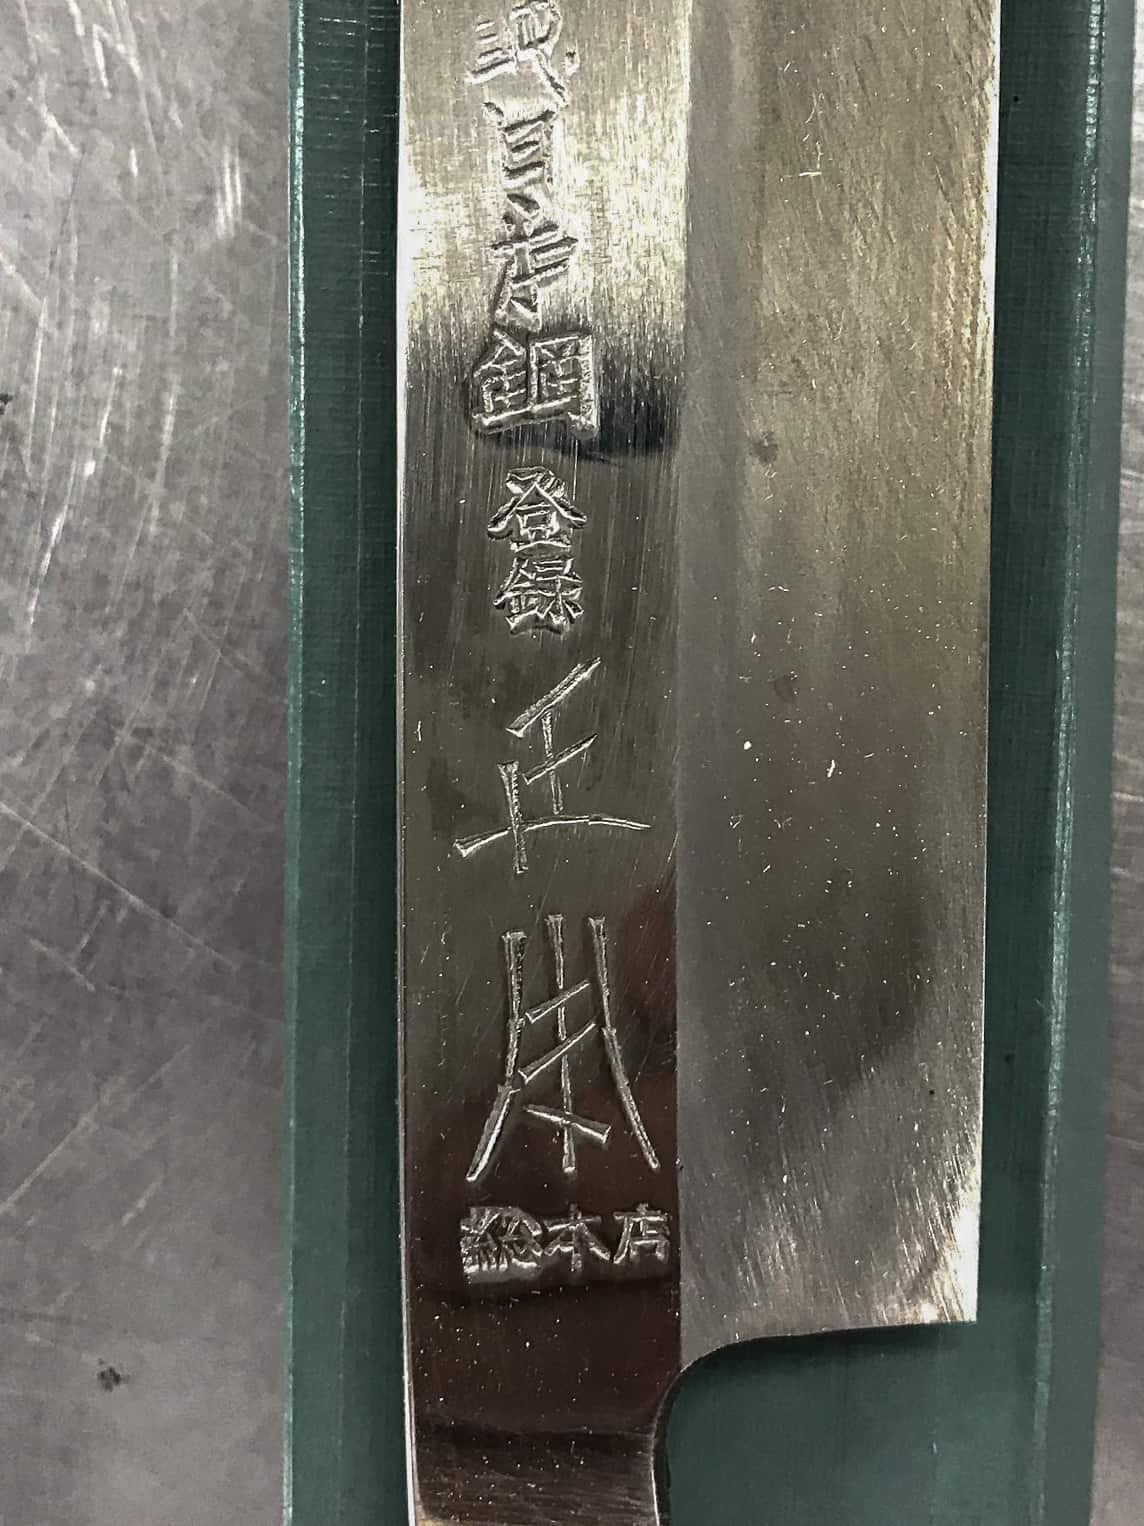 Masamoto Sohonten (正本総本店) knife